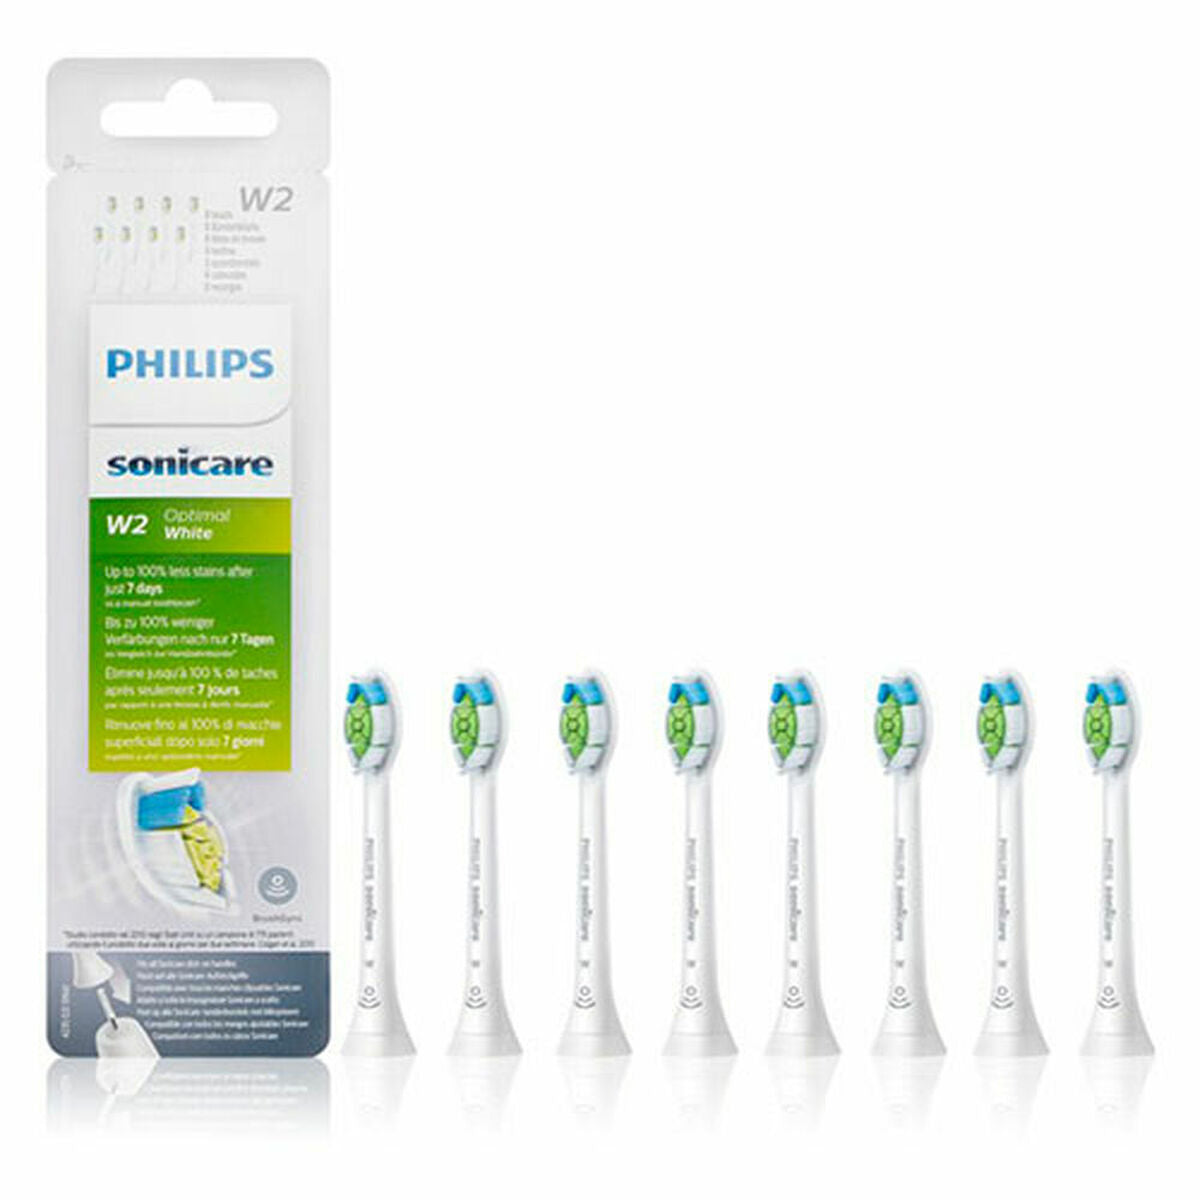 Replacement Head Philips Paquete de 8 cabezales de cepillado sónicos estándar